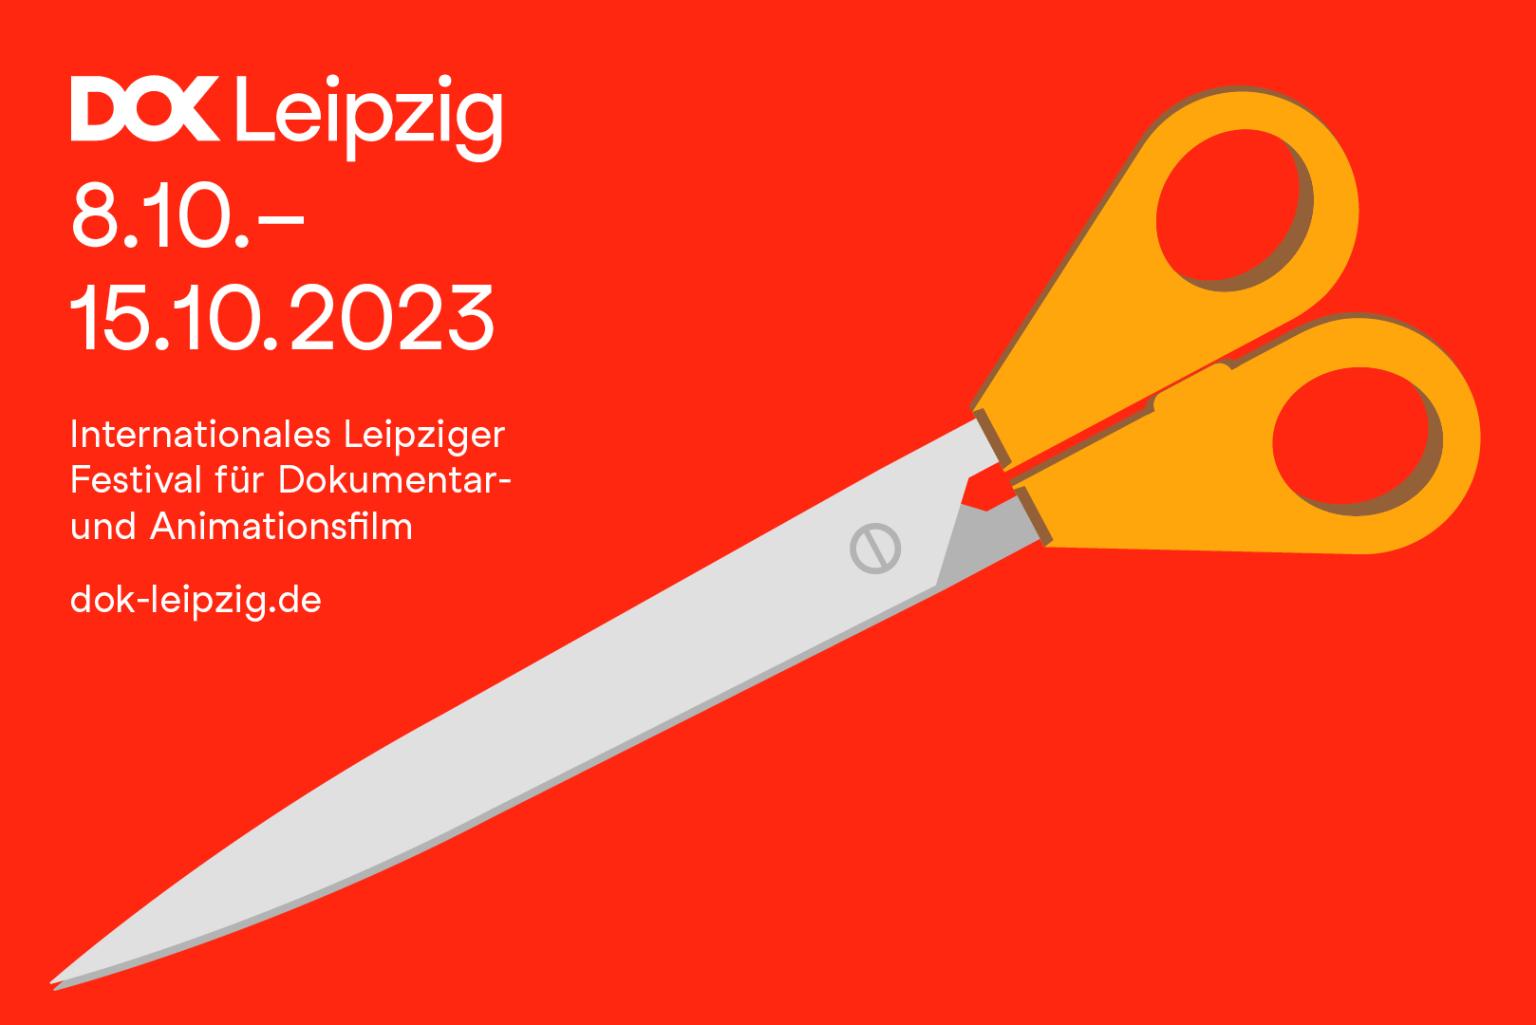 Das Festivalmotiv von 2023 zeigt eine Schere mit grauer Klinge und orangefarbenen Griffen auf rotem Hintergrund.